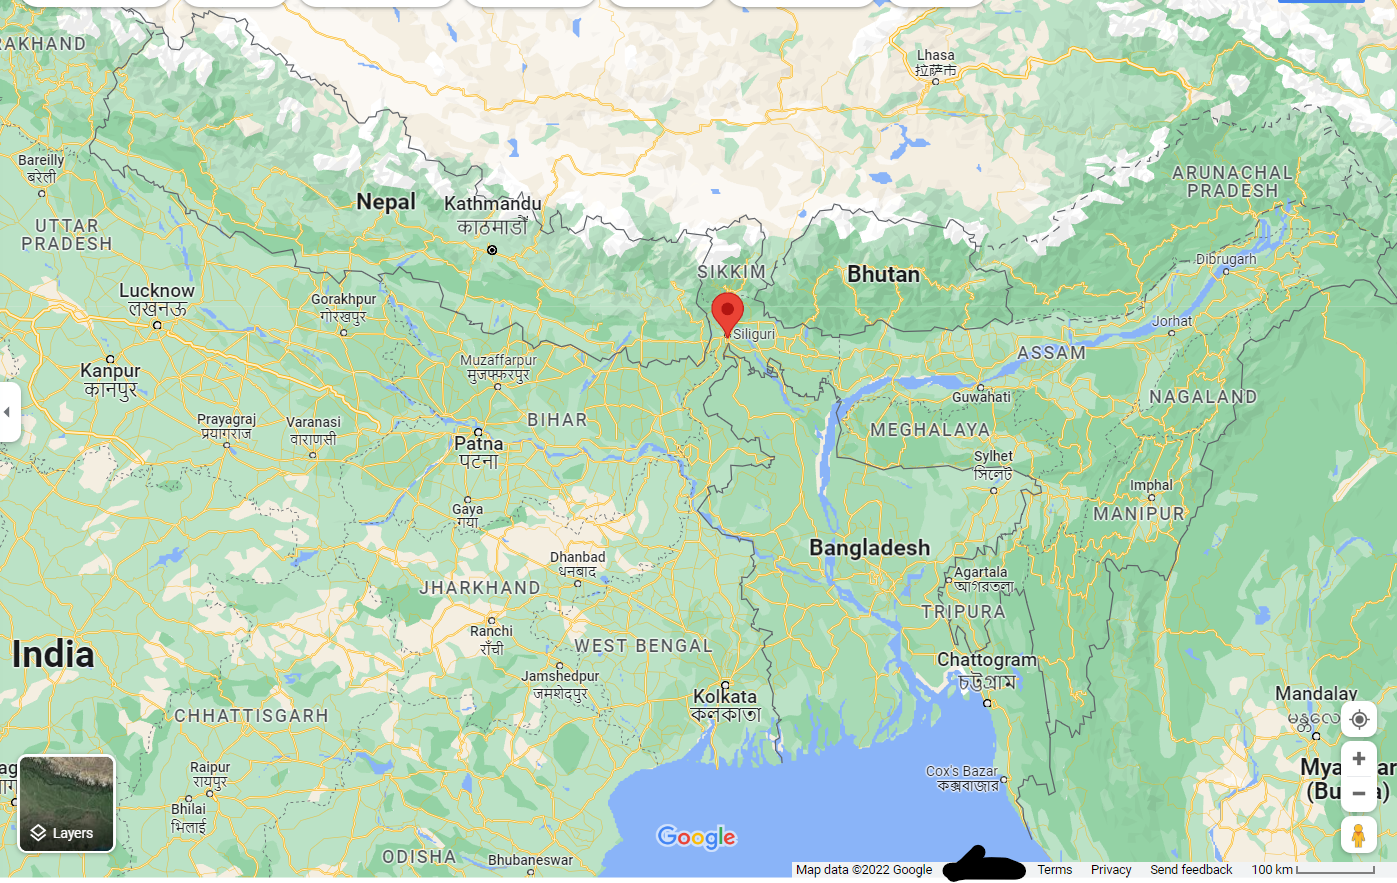 https://www.google.com/maps/place/Siliguri,+West+Bengal,+India/@25.8220123,84.665501,6.43z/data=!4m5!3m4!1s0x39e44114f5441dcd:0xdeb5c4702063edff!8m2!3d26.7271012!4d88.3952861